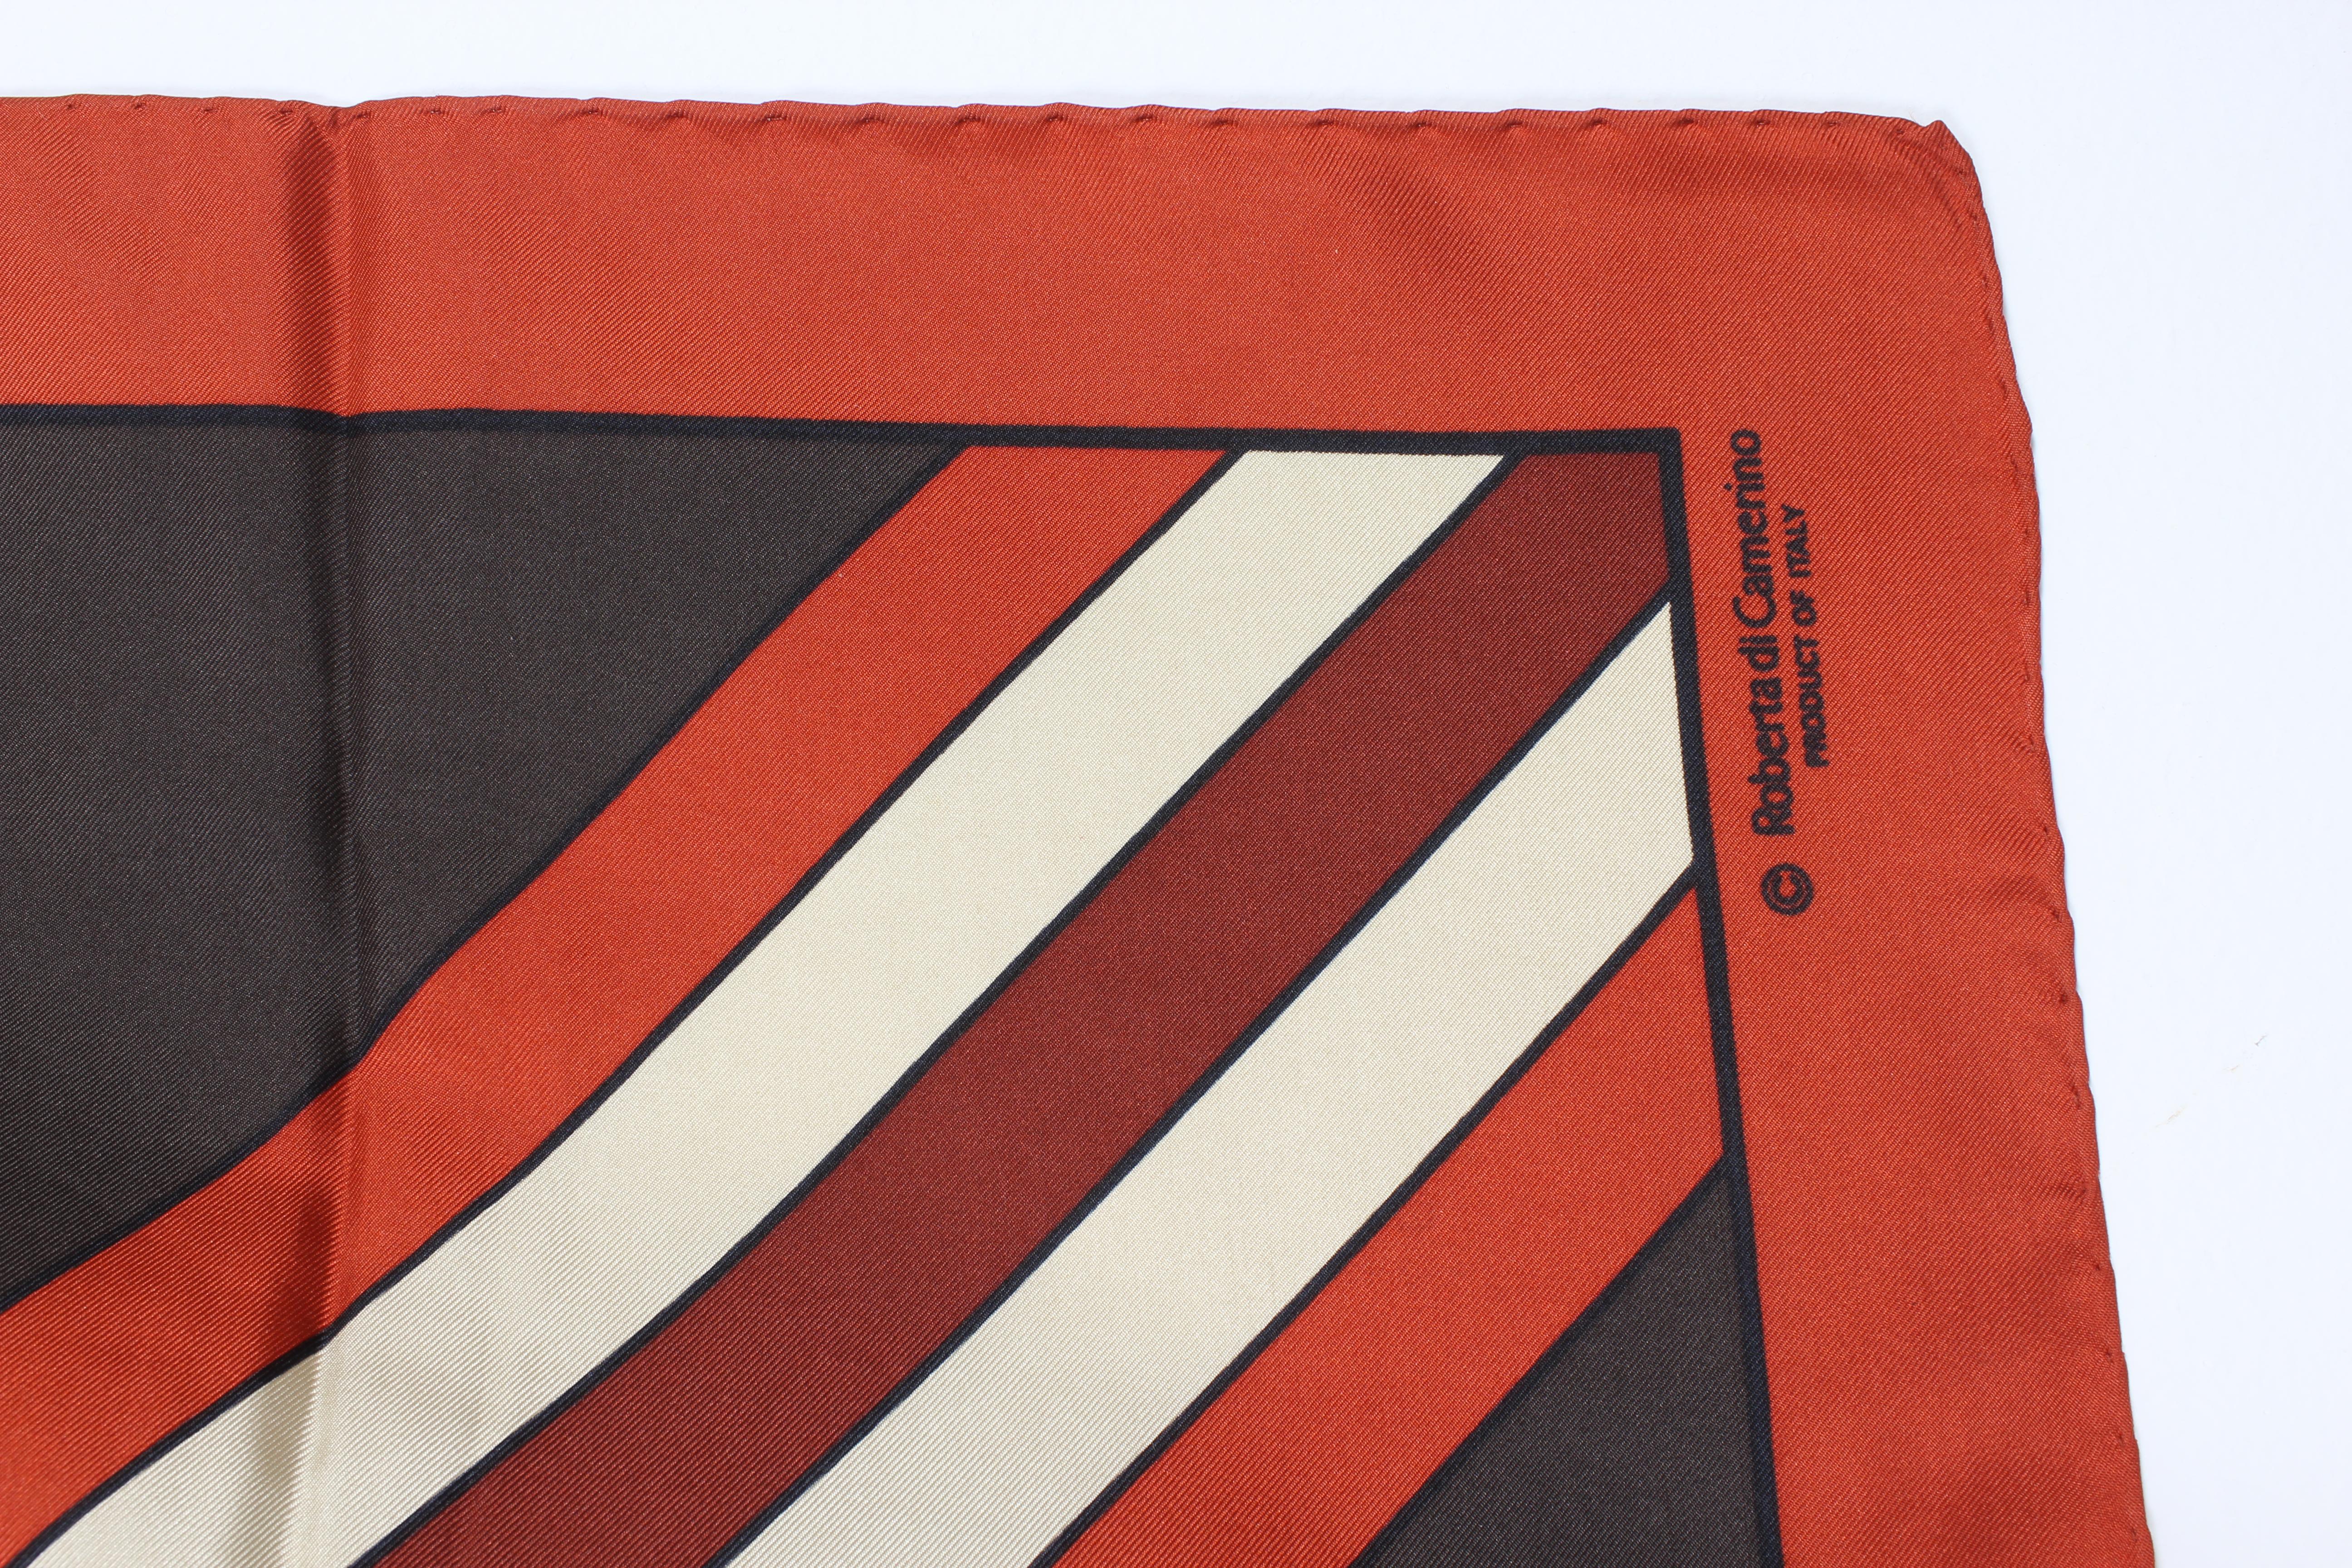 Roberta di Camerino Vintage-Schal aus den 80ern. Braun-, orange- und beigefarben mit dem typischen Muster der Designerin. stoff aus 100% Seide. Hergestellt in Italien.

Maße: 85 x 85 cm